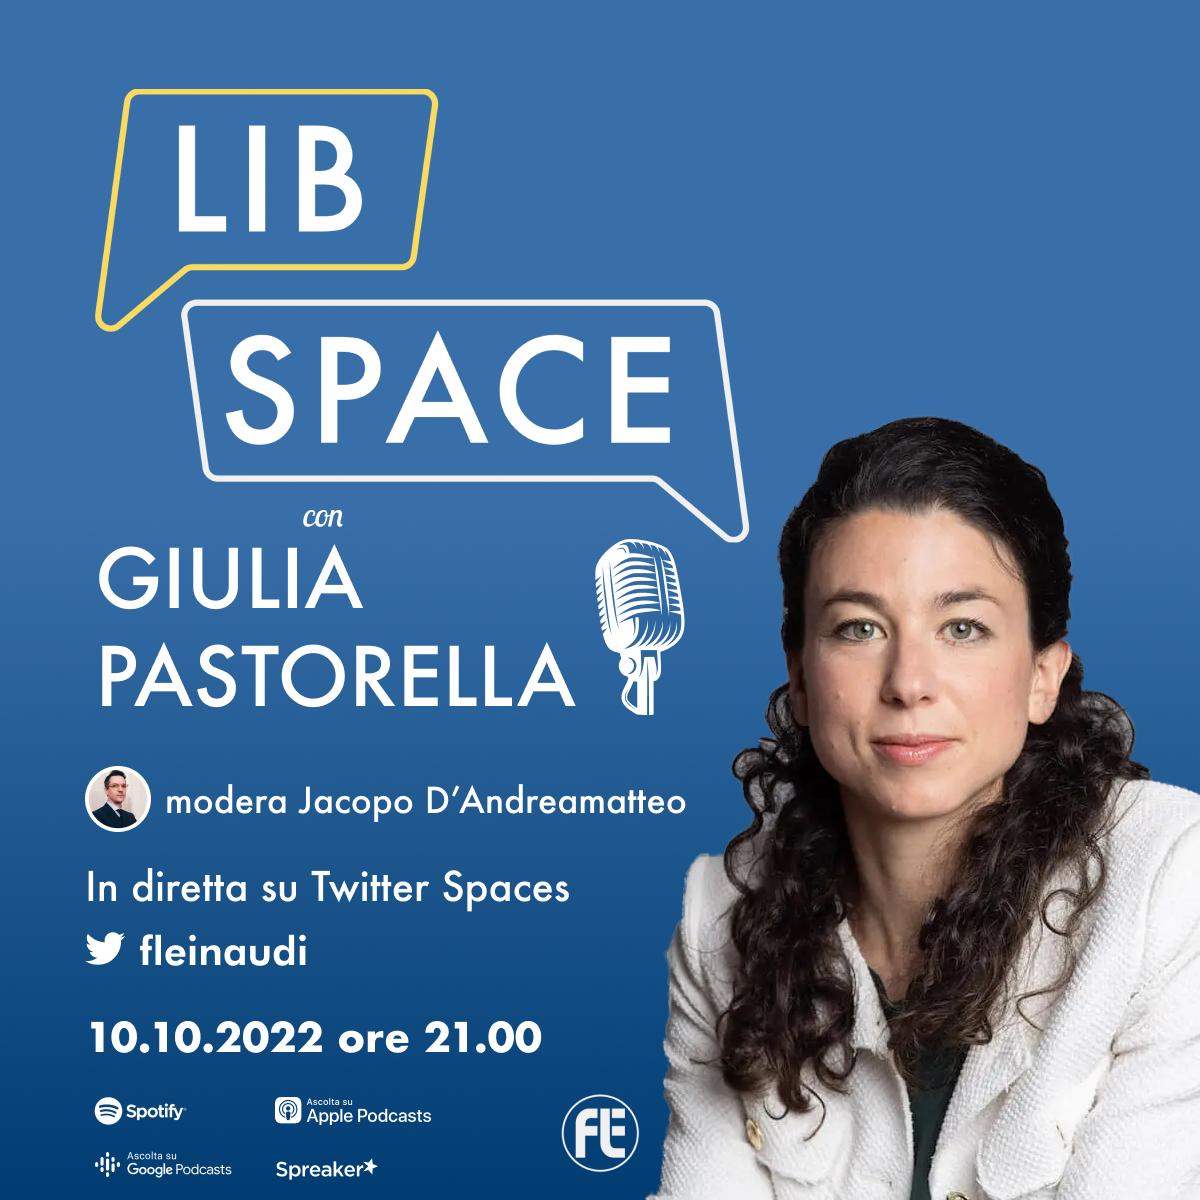 LibSpace con Giulia Pastorella